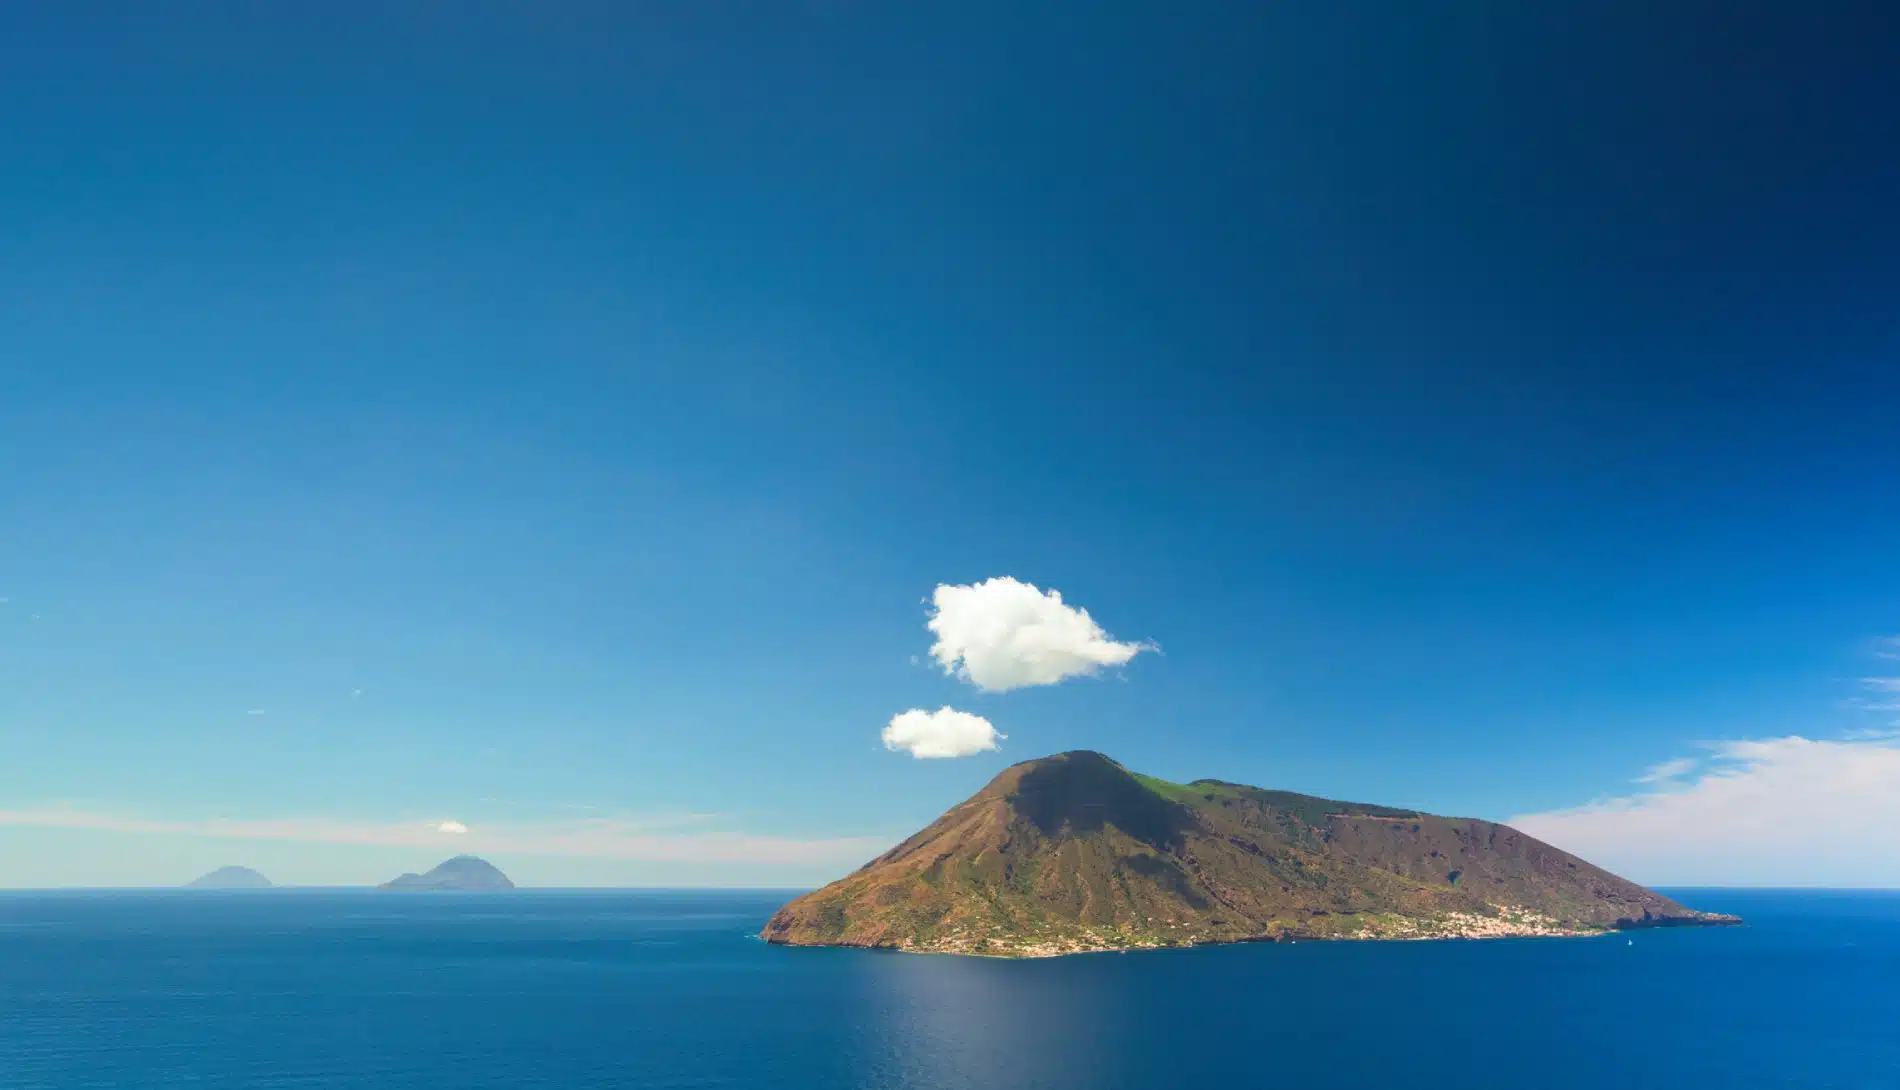 Ponza, Procida, Filicudi : les îles préservées de la mer tyrrhénienne